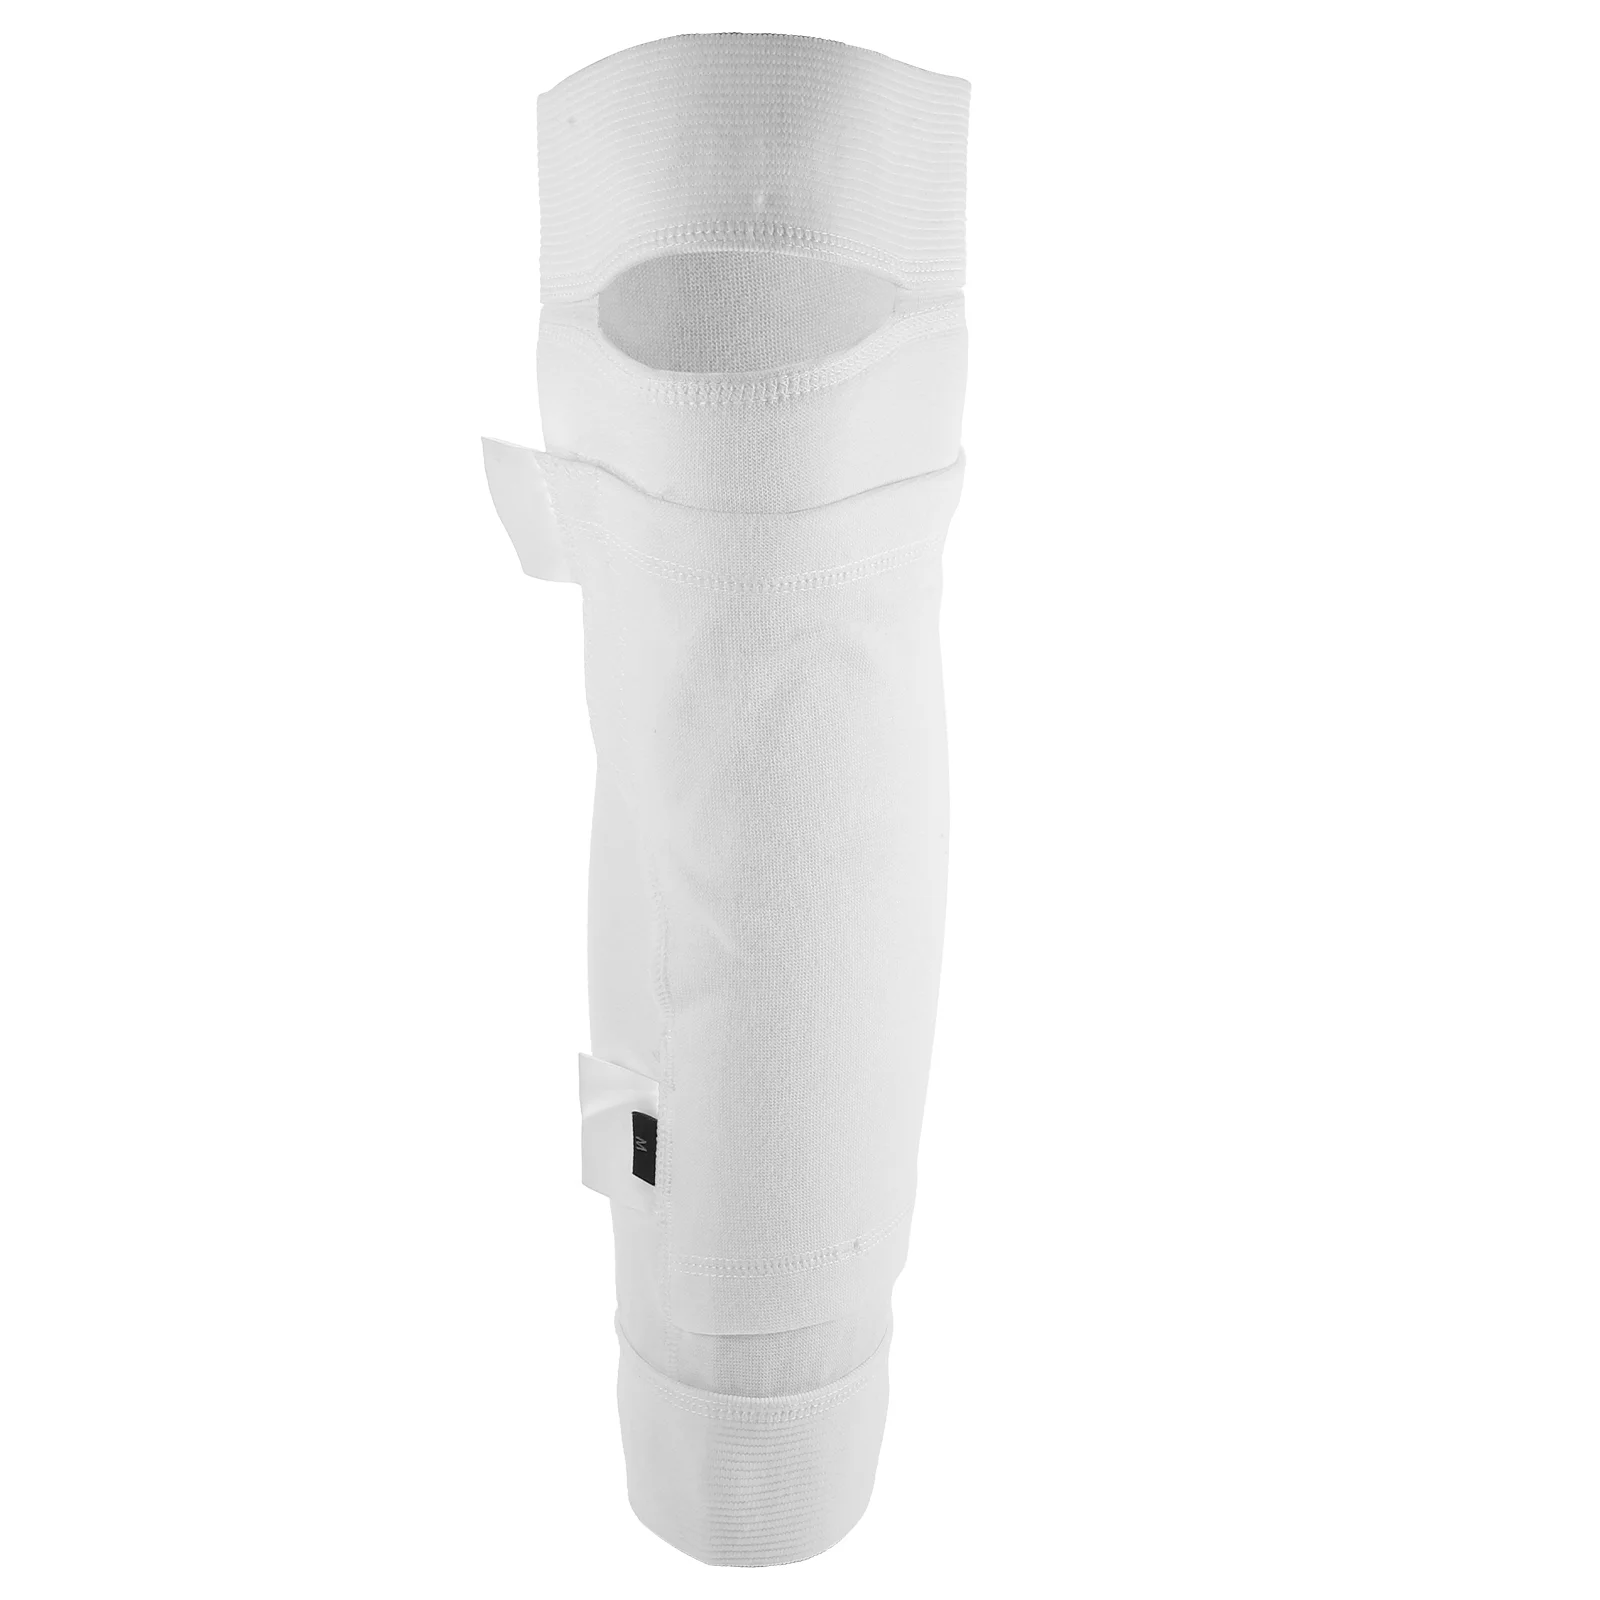 

foley catheter leg strap: bags for men catheter leg bag holder stabilization device legband holder catheter tube urinary tube